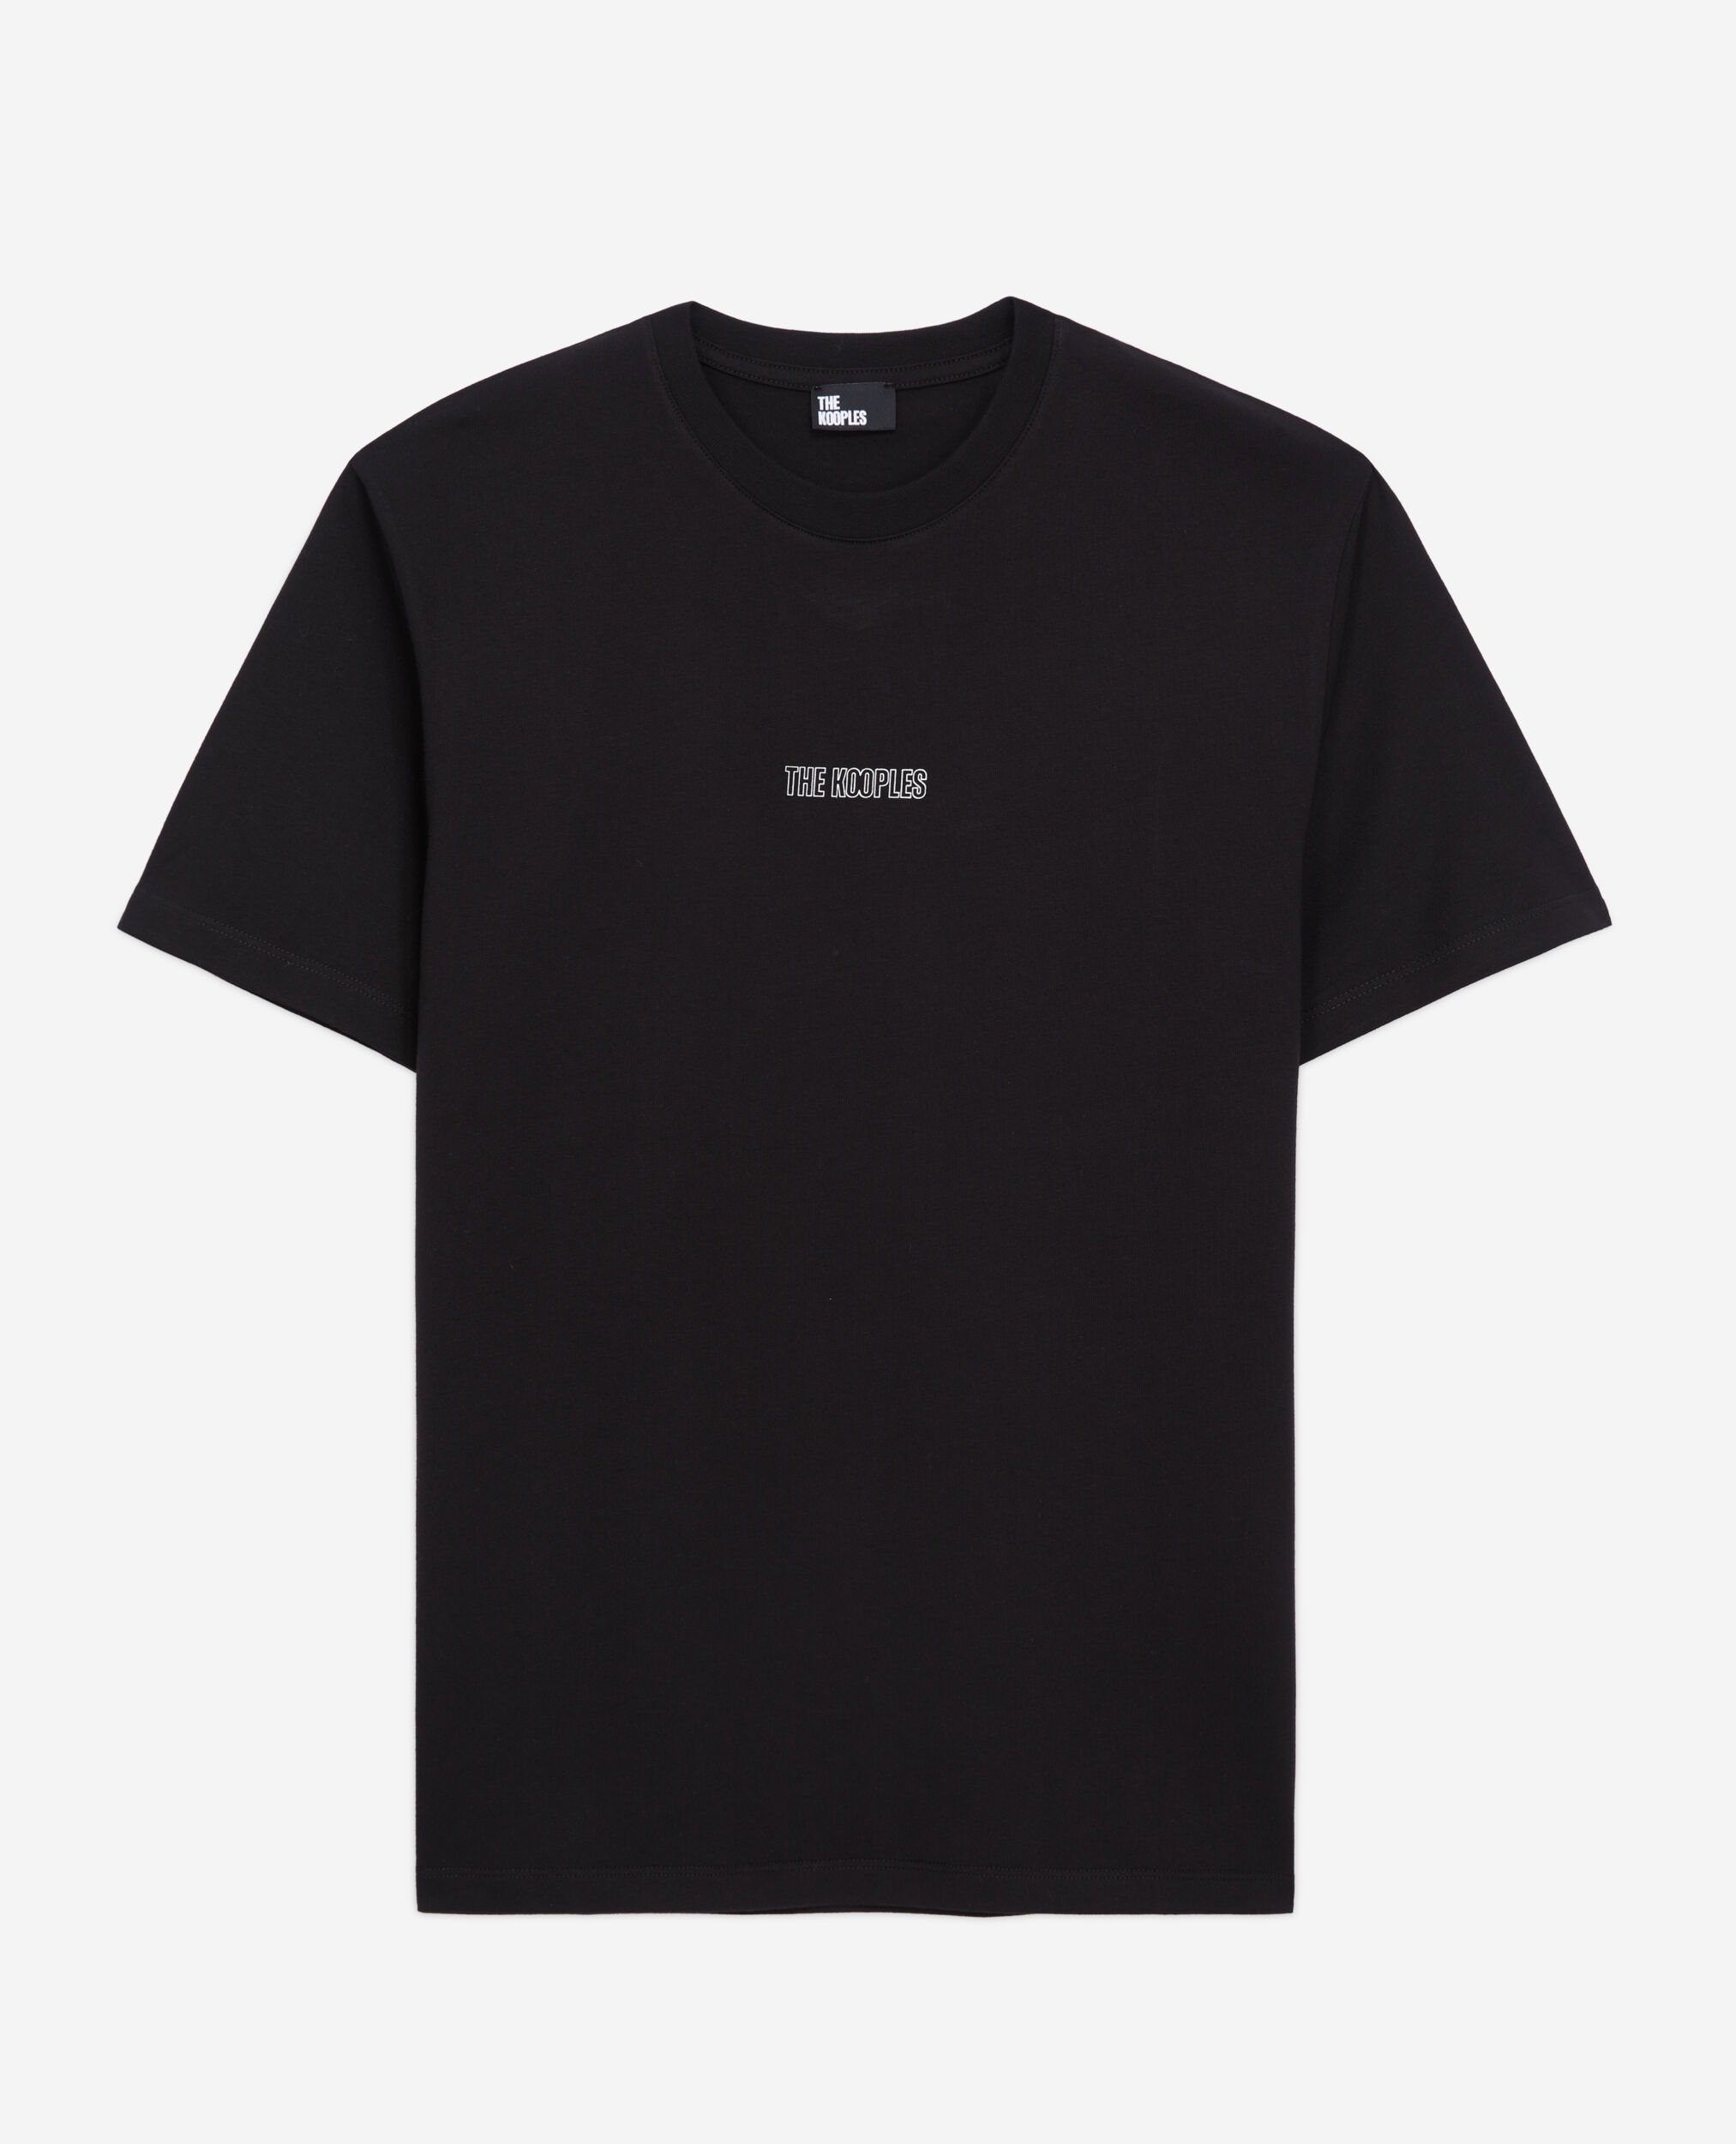 The Kooples Men's Short-Sleeve Printed Shirt